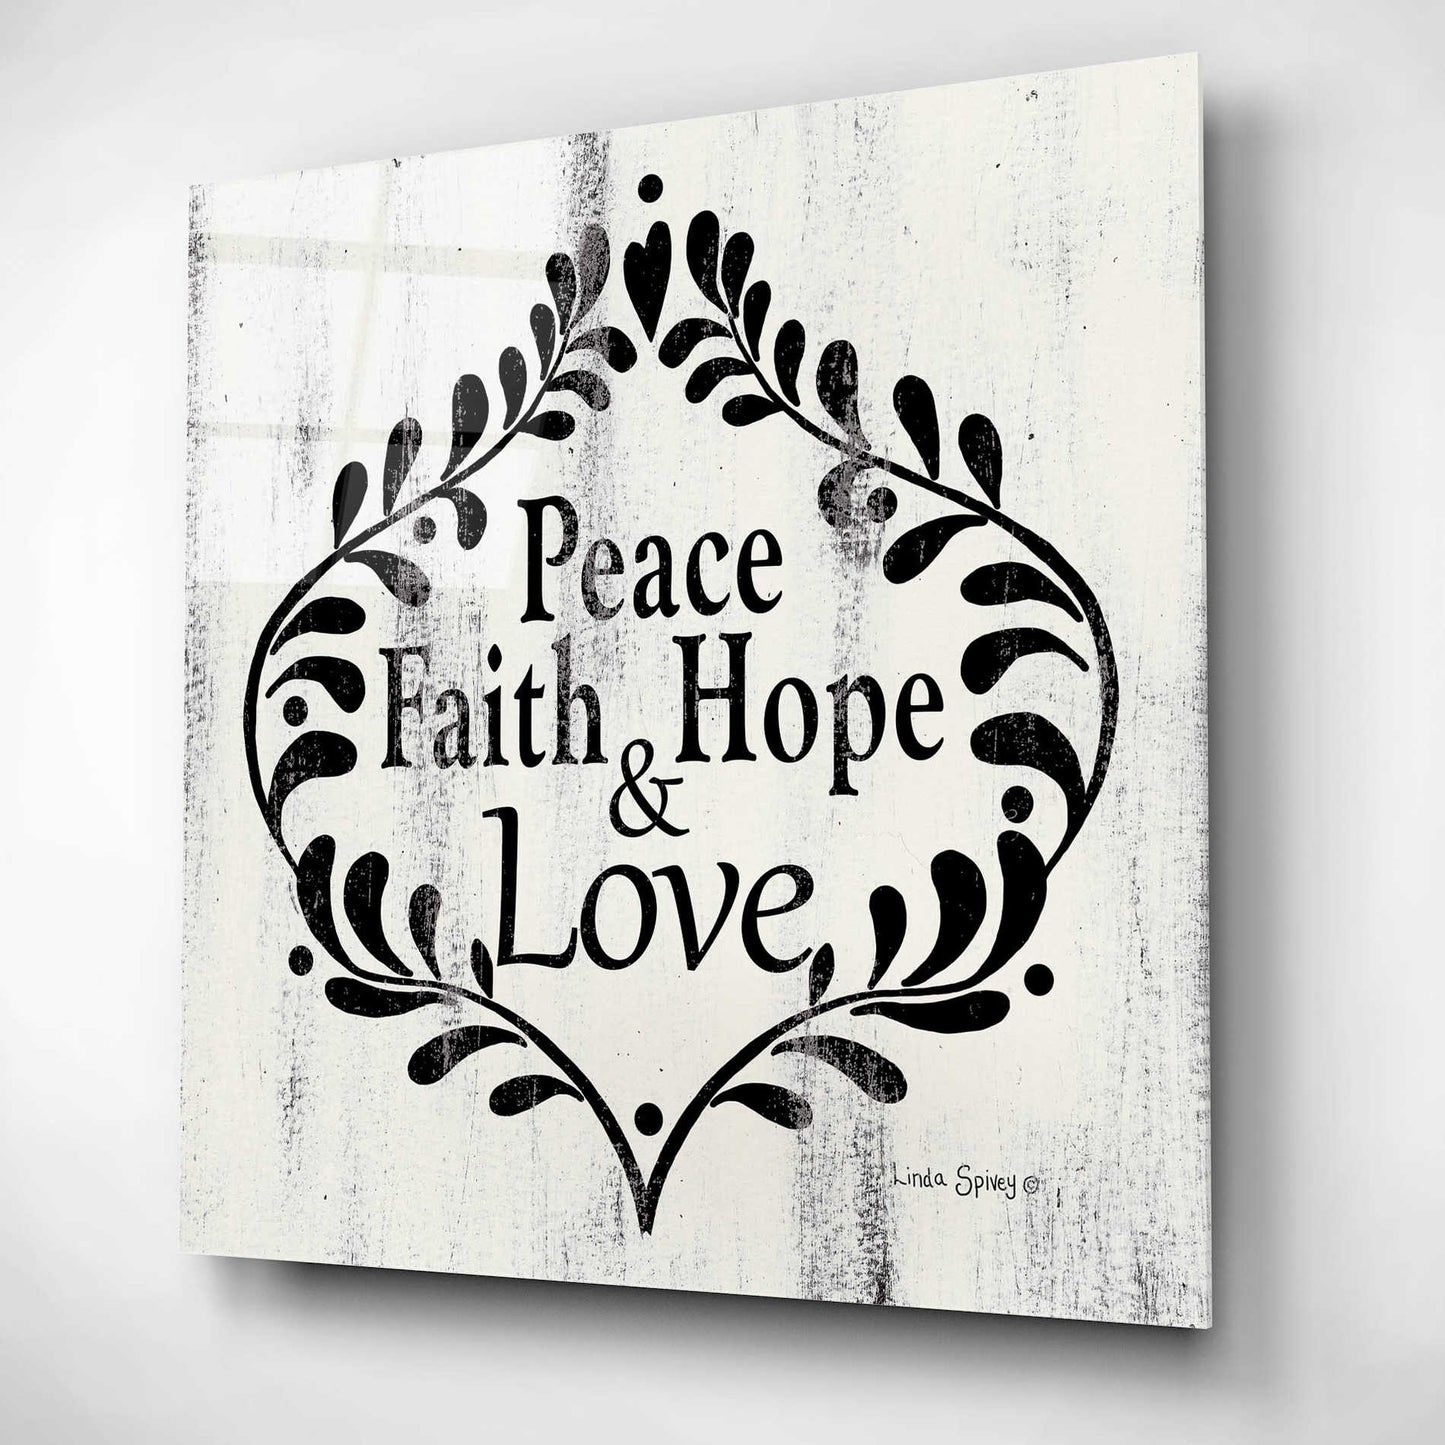 Epic Art 'Peace Faith Hope & Love' by Linda Spivey, Acrylic Glass Wall Art,12x12